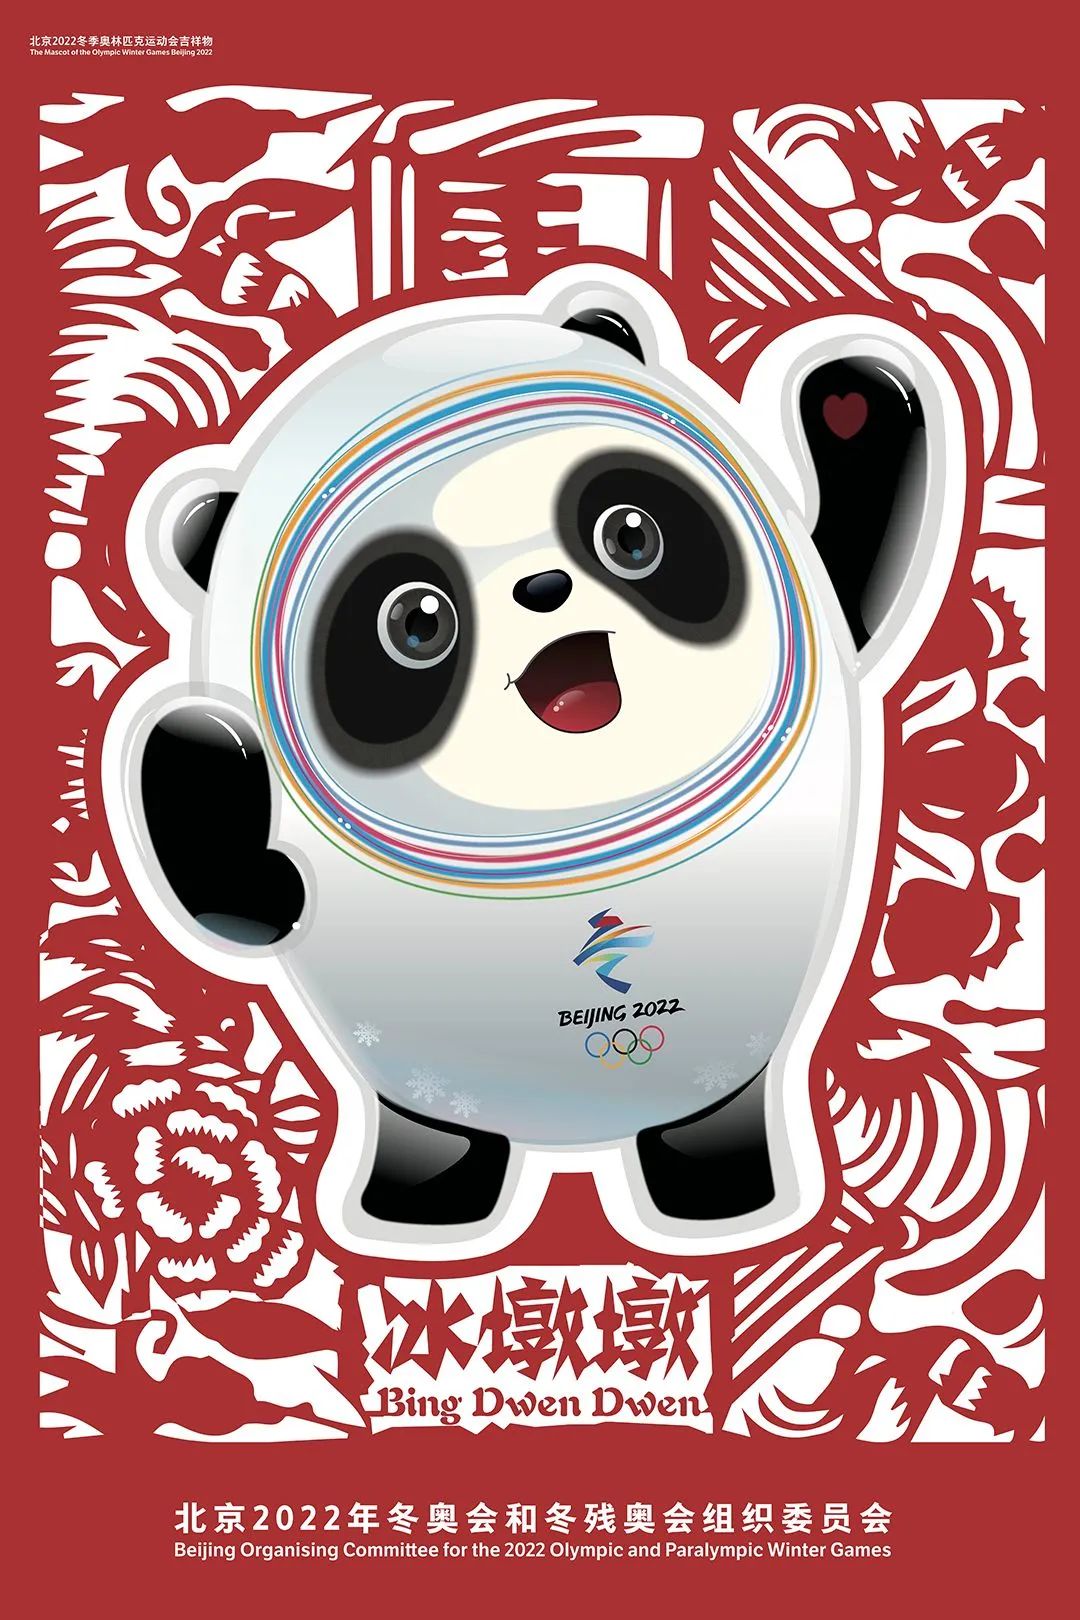 关注北京2022 | 当年画娃娃遇上冬奥项目会产生怎样的